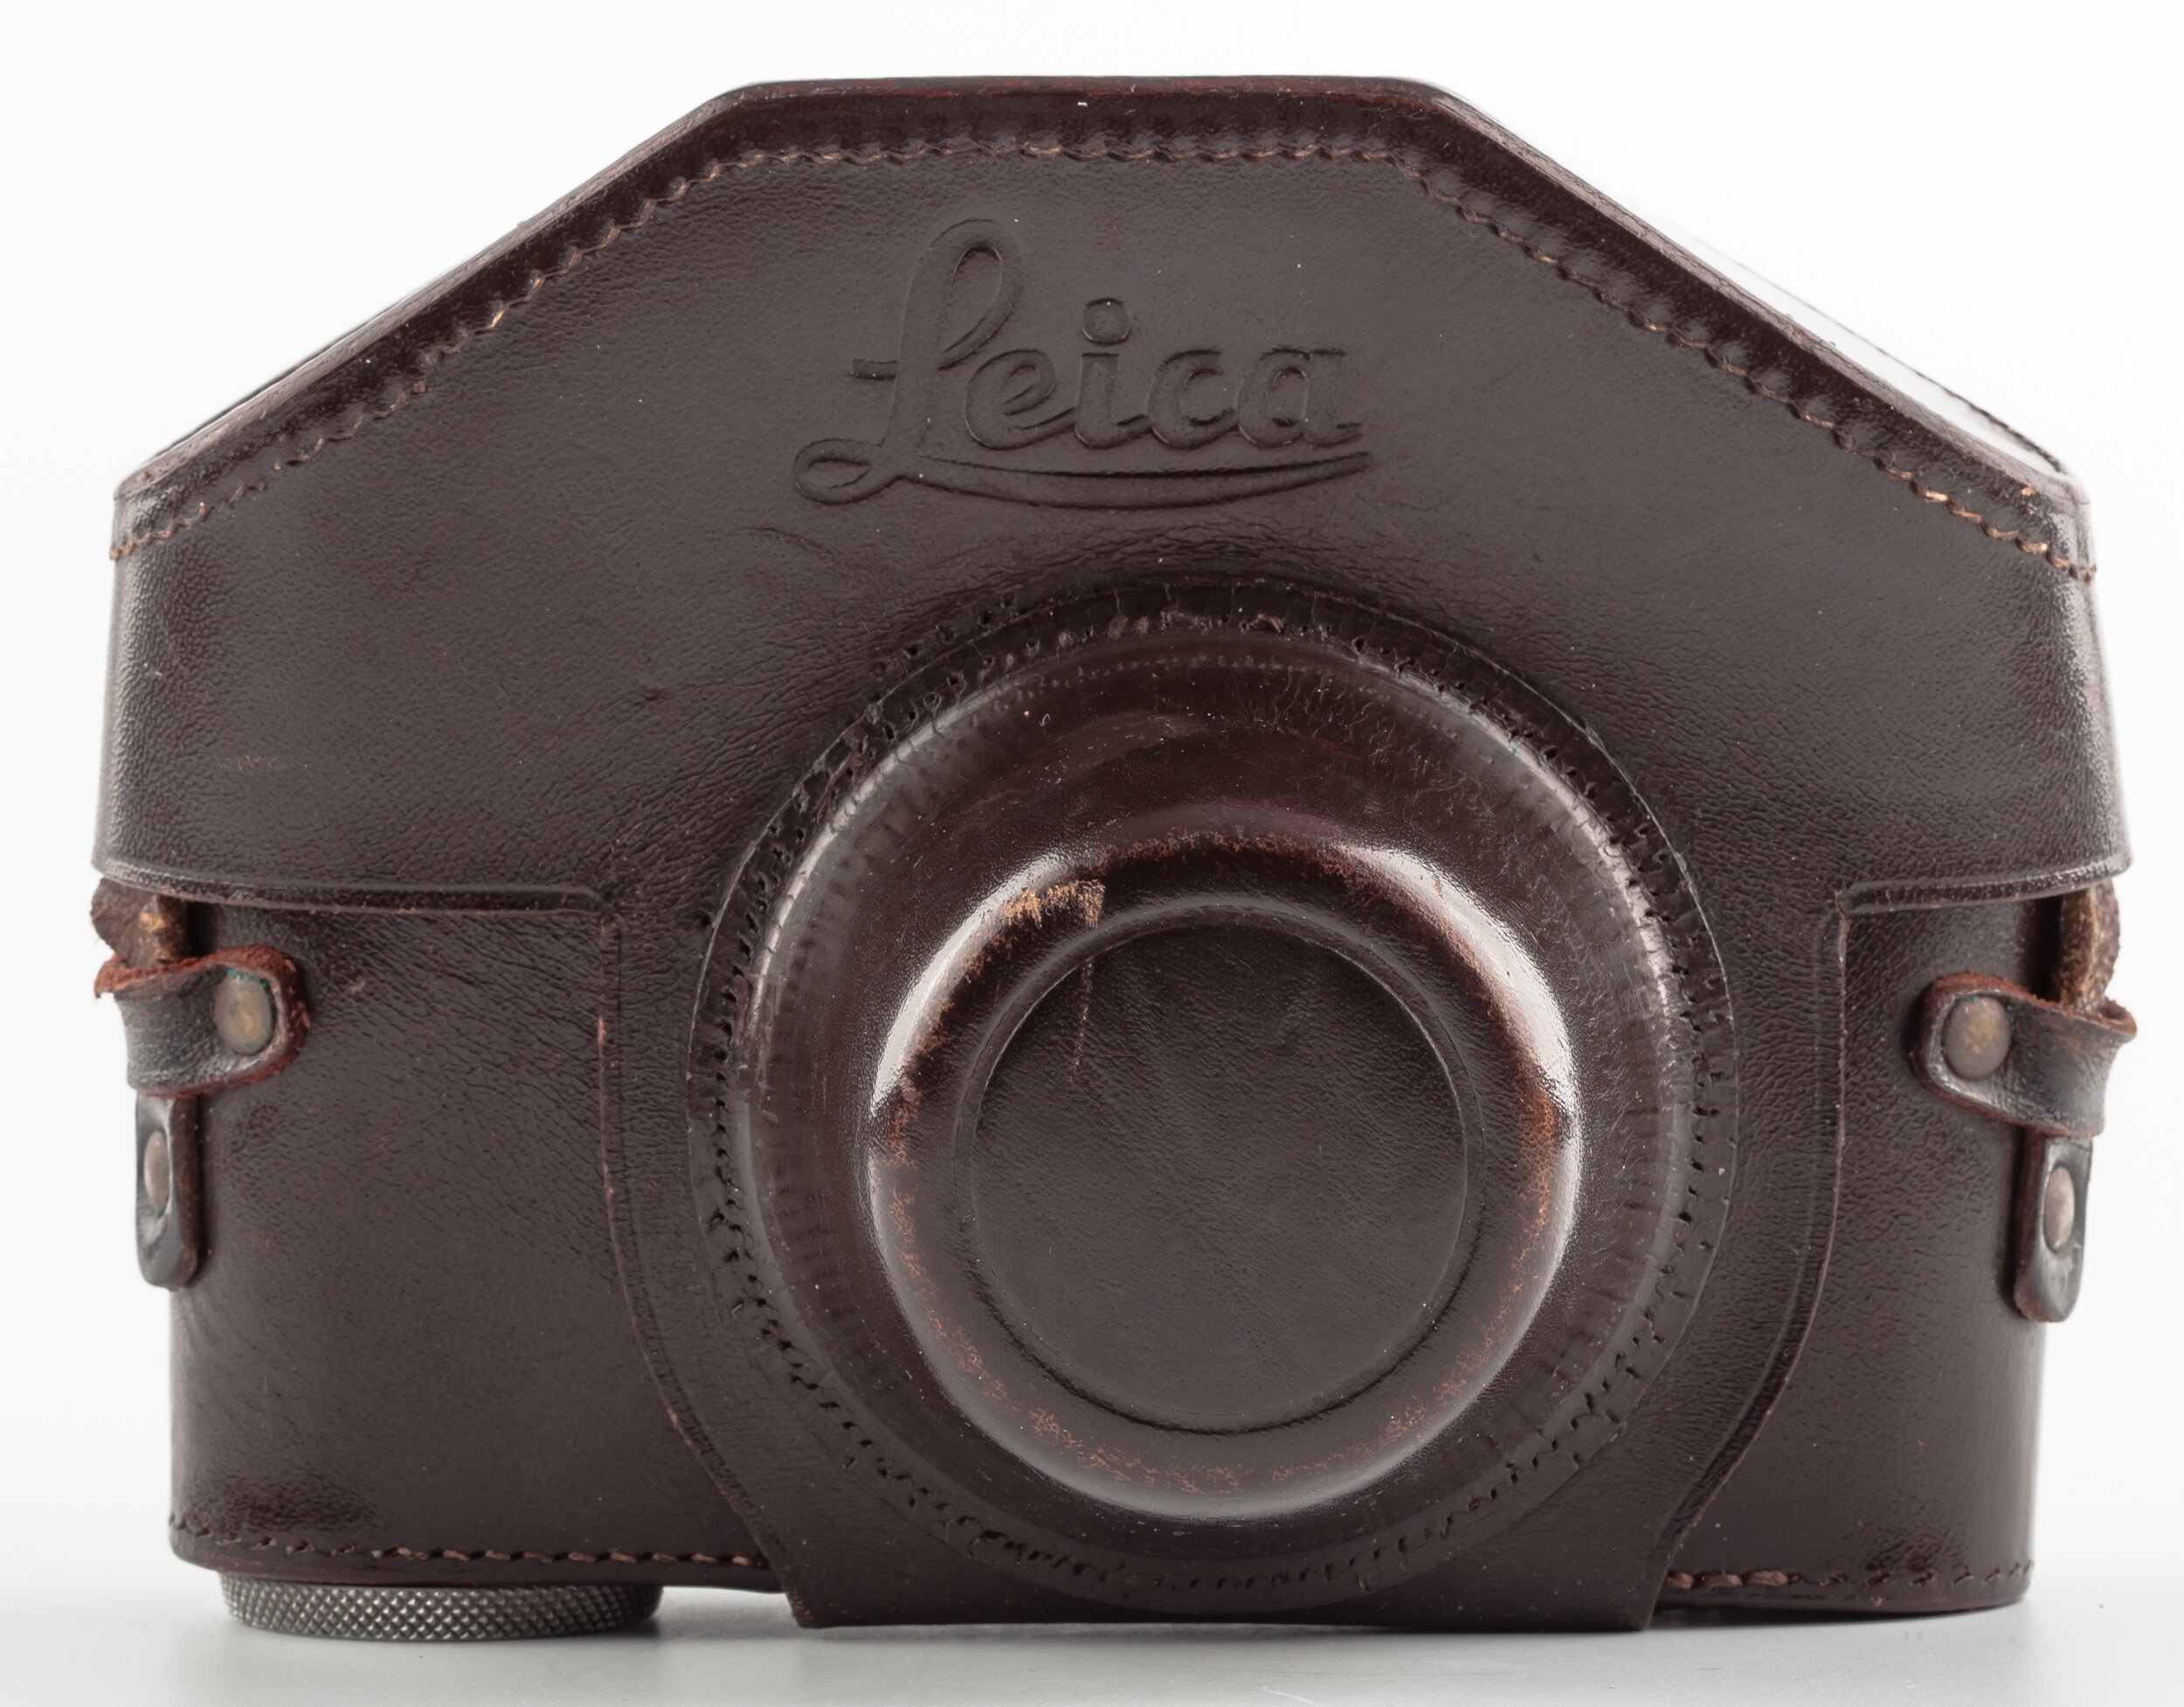 Leica Case srew mount body